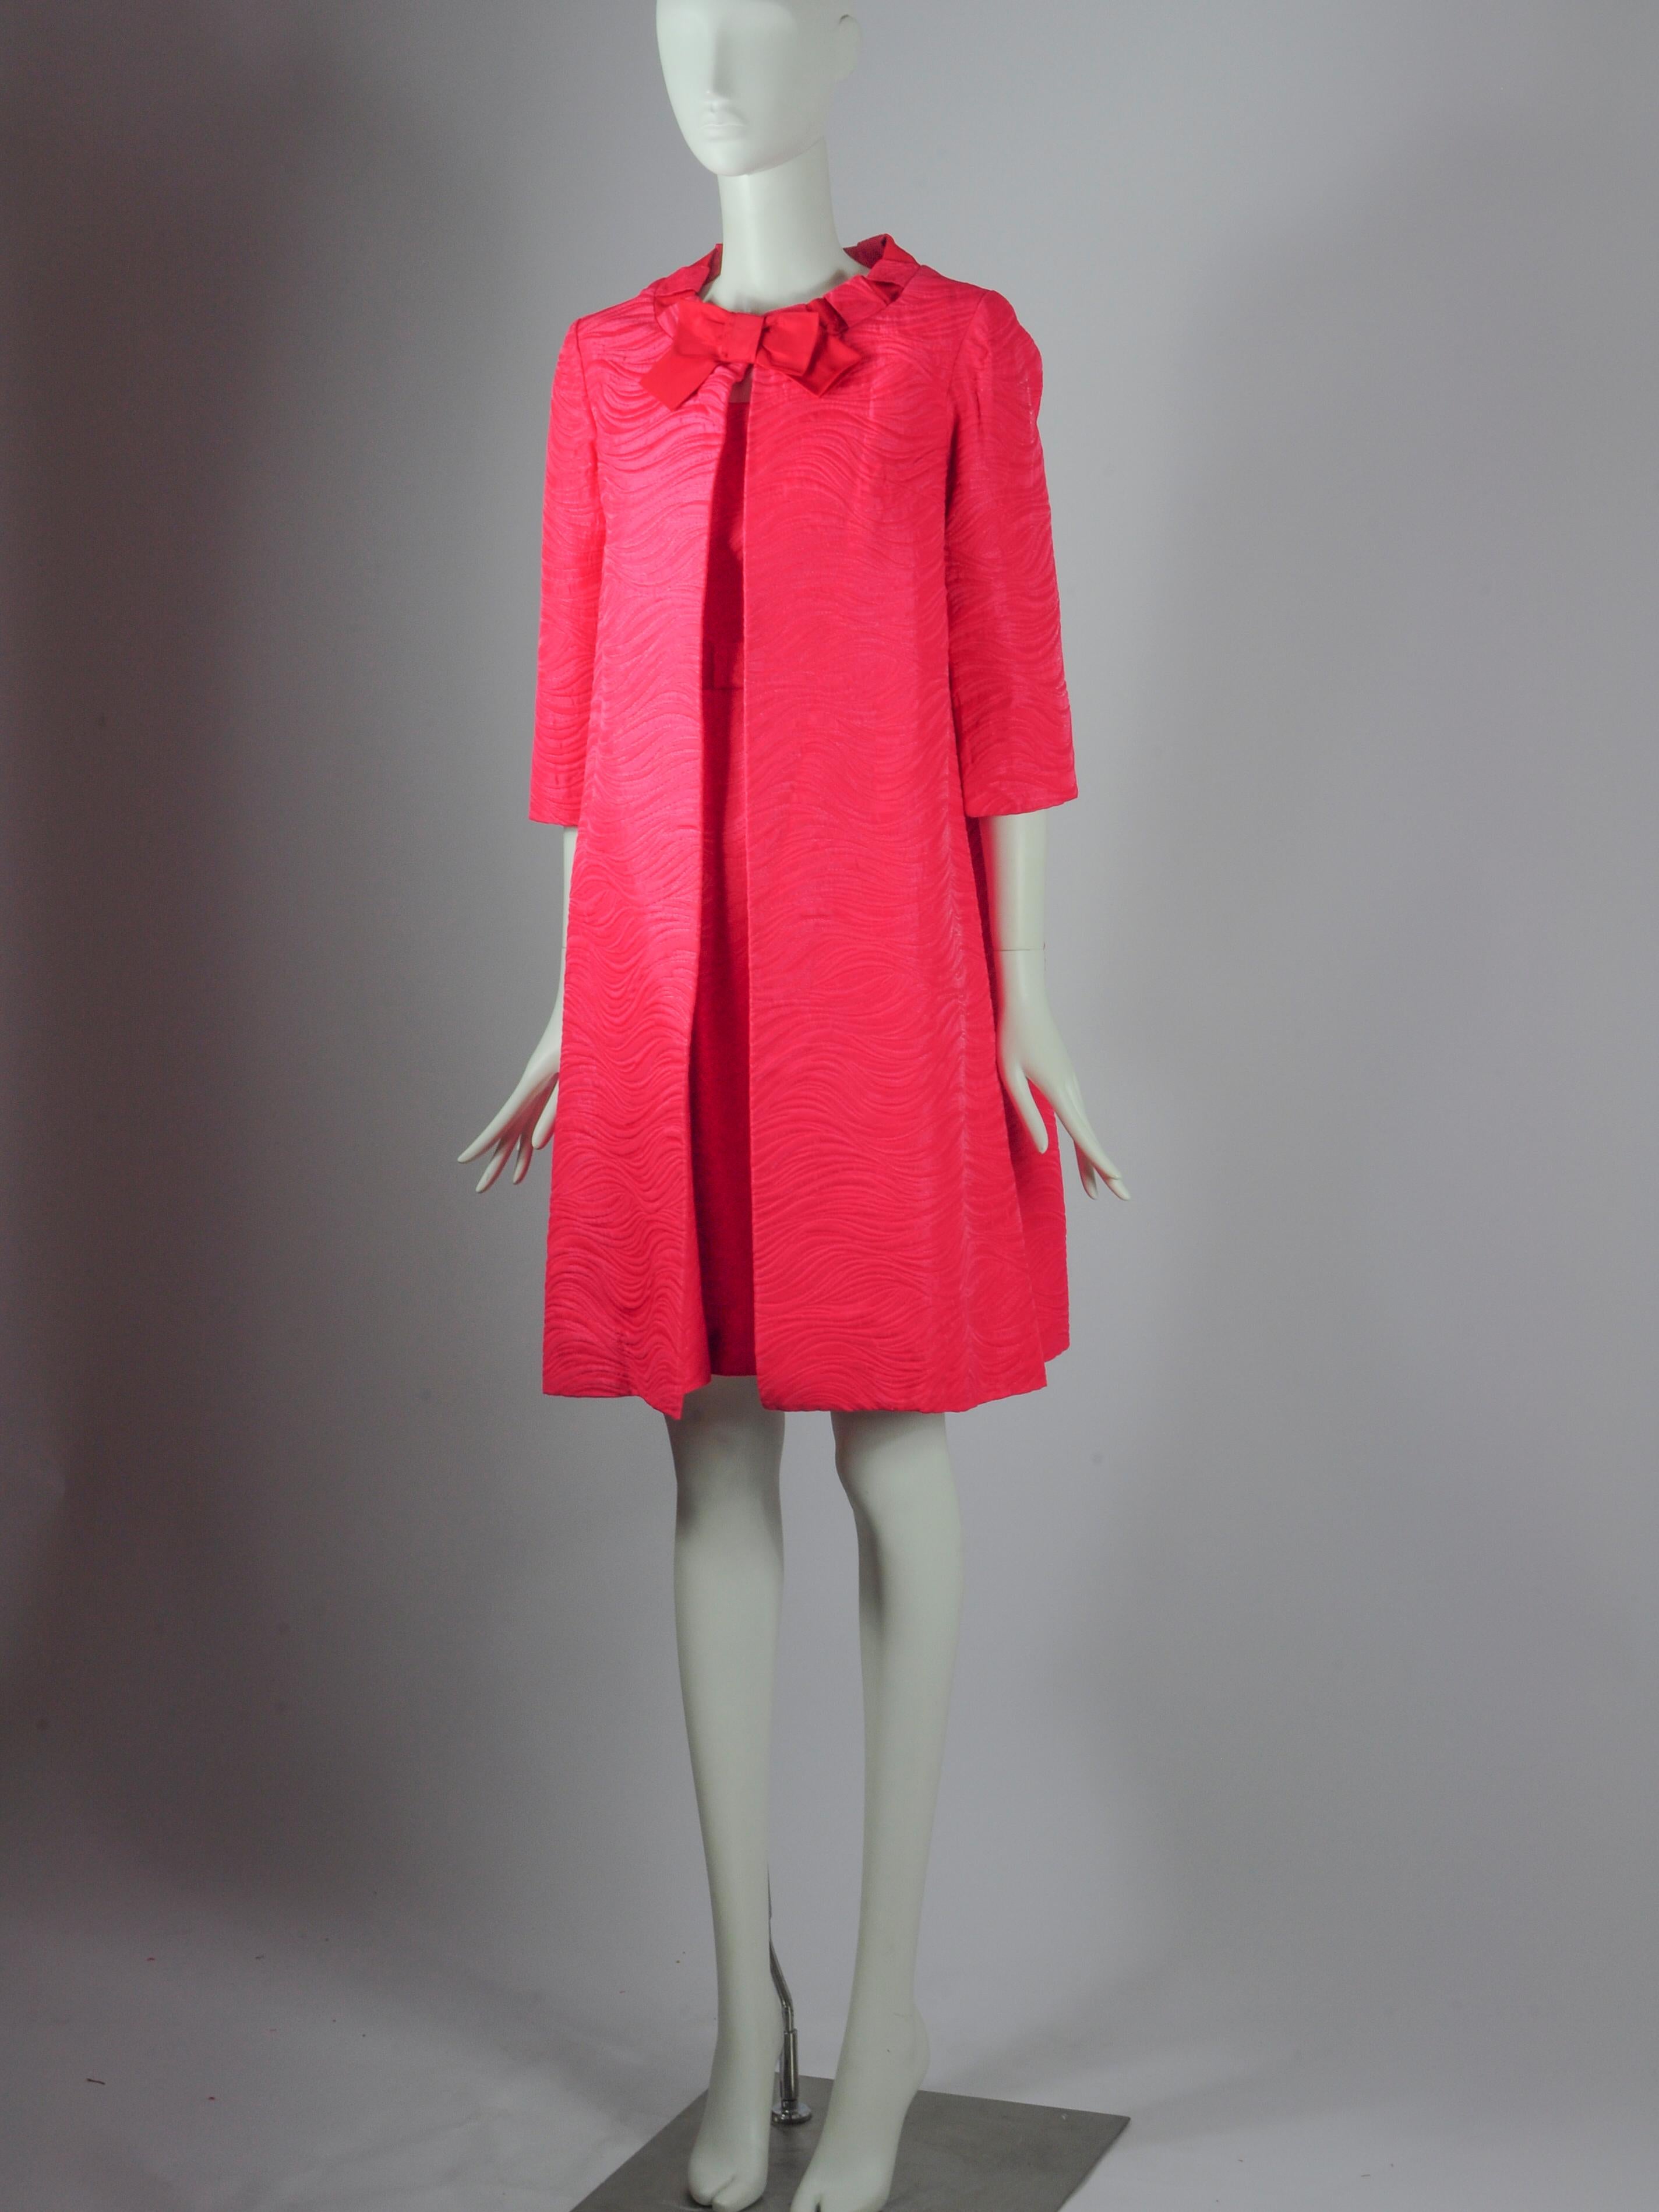 Ensemble deux pièces vintage Jean Allen London composé d'une veste et d'une robe sans manches en rose fuchsia avec détails de nœuds. Il s'agit d'un beau tissu structuré avec un motif de vagues et un léger fil métallique tissé. Elle a un air de